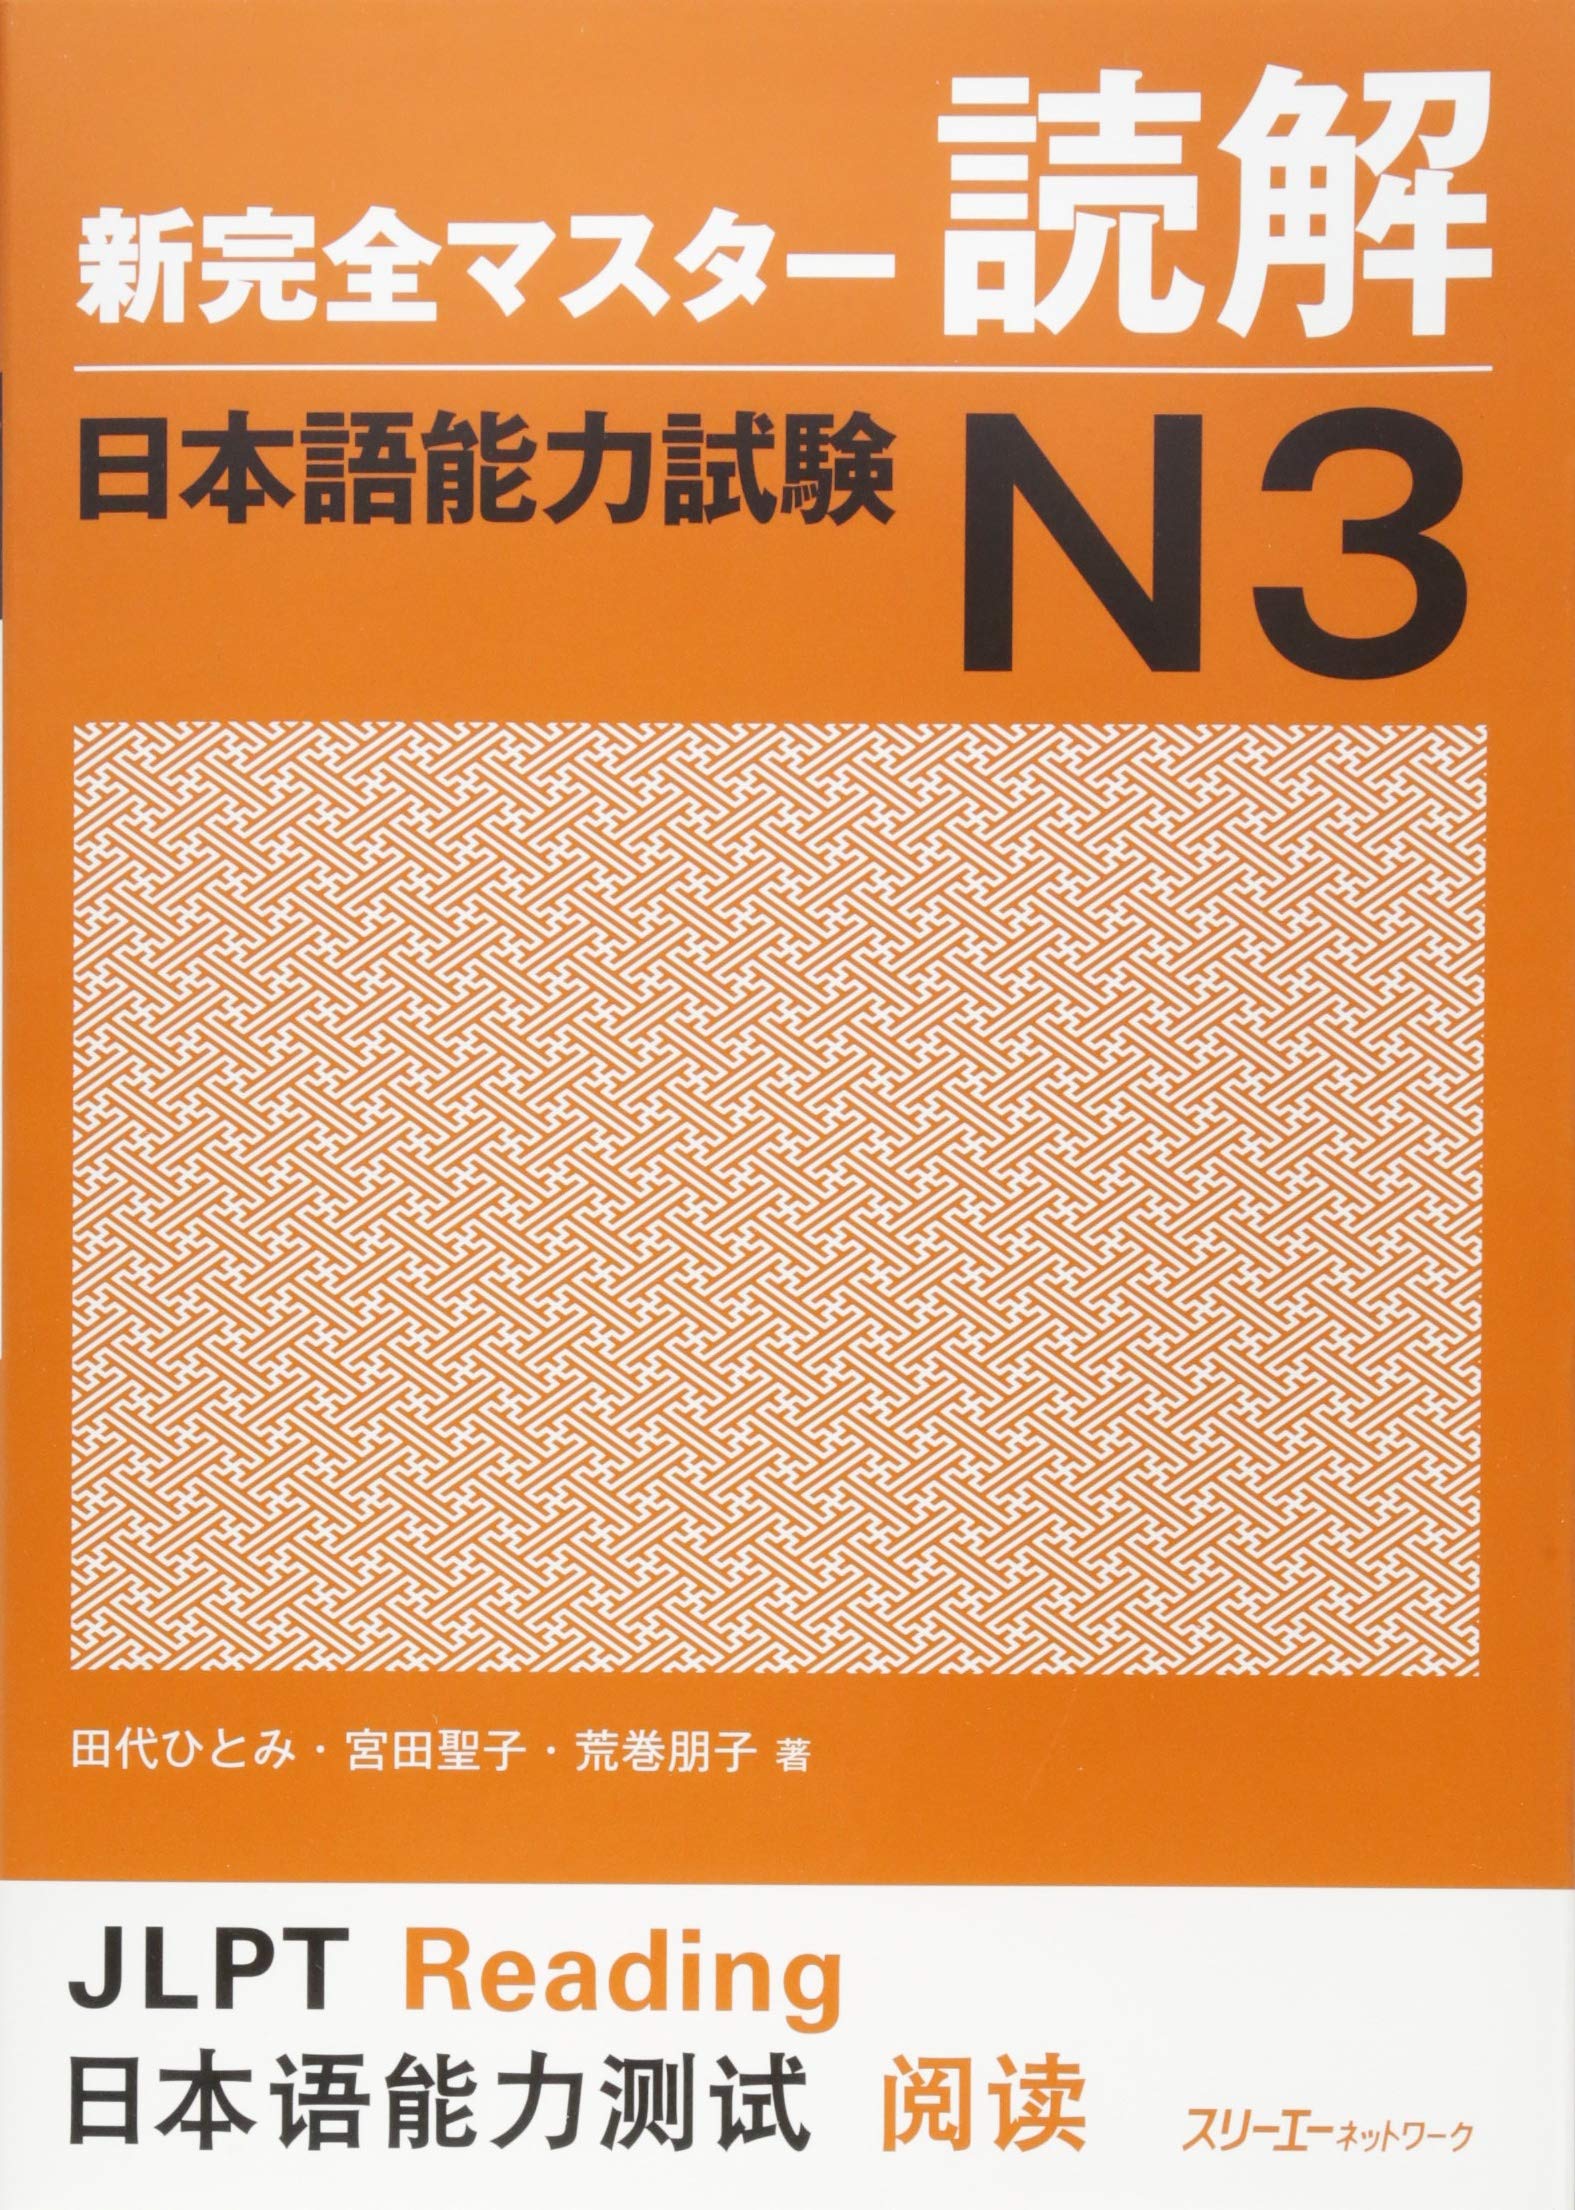 Shin Kanzen Master N3 Reading Dokkai Jlpt Japan Language Proficiency Test